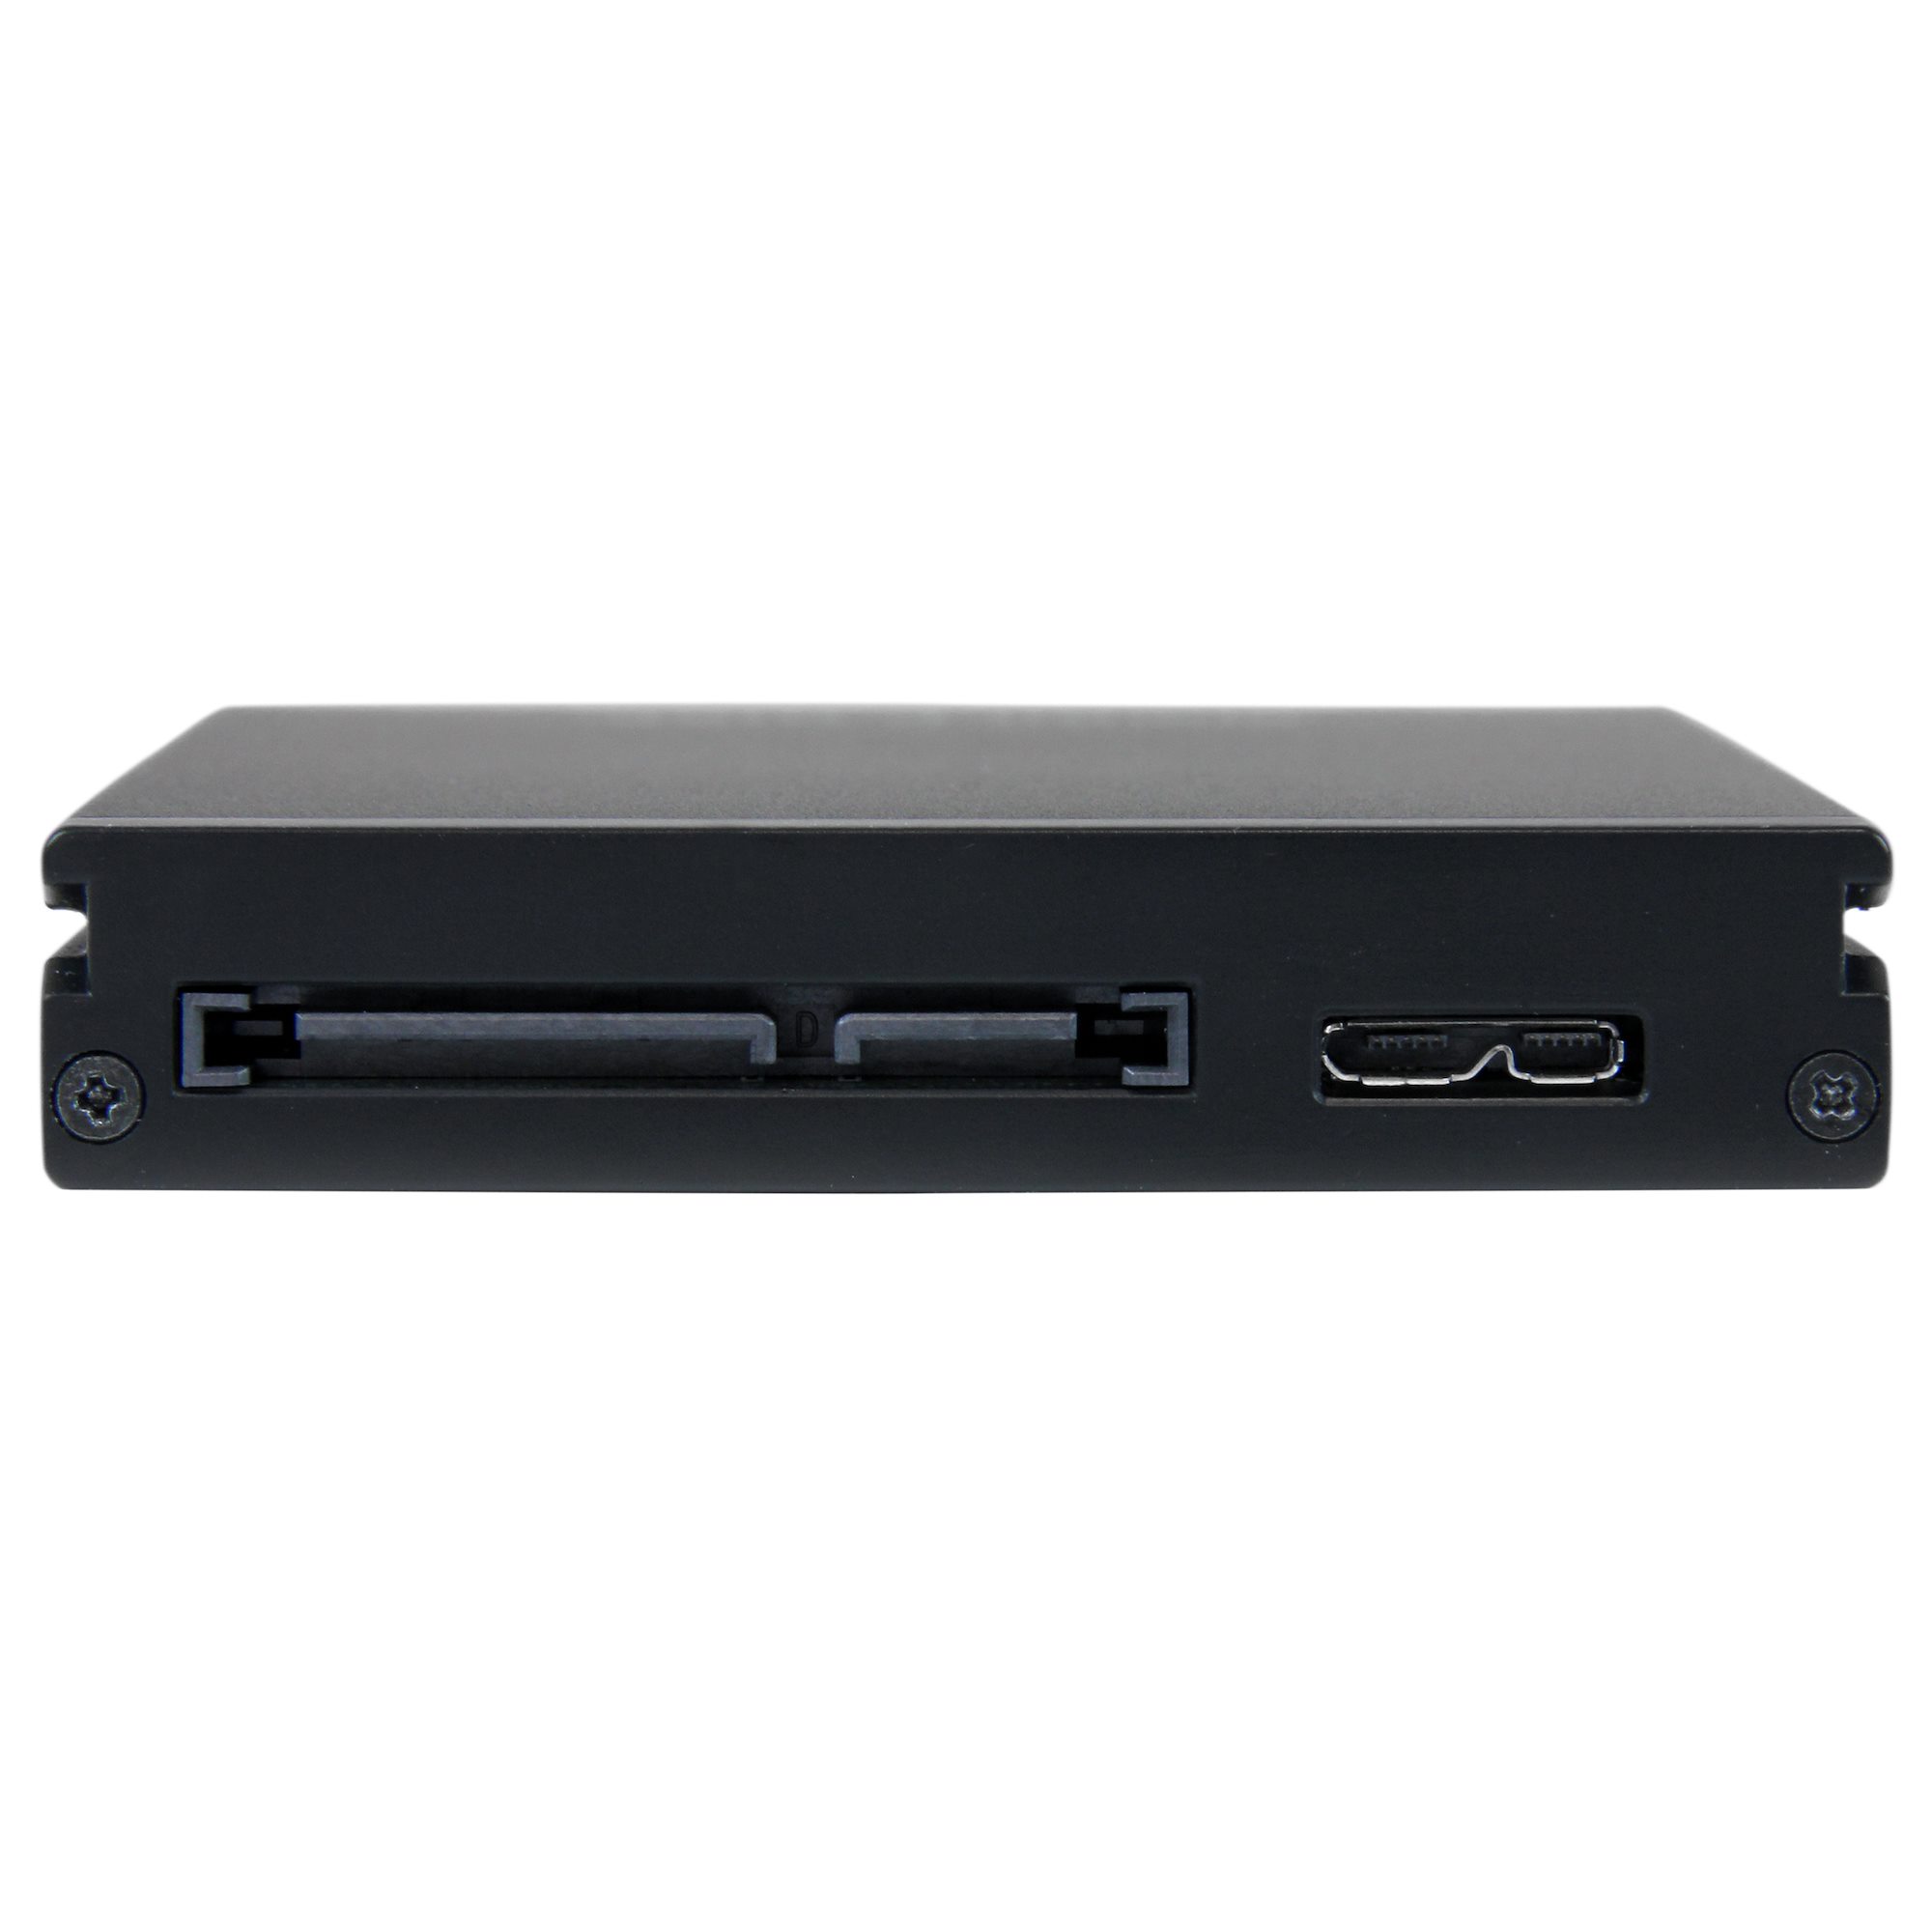 Caraele 500Go Disque Dur Externe Ultra Fin 2,5'' USB3.0 SATA Compatible  pour PC, Ordinateur de Bureau, Ordinateur Portable, MacBook, Chromebook,  Wii